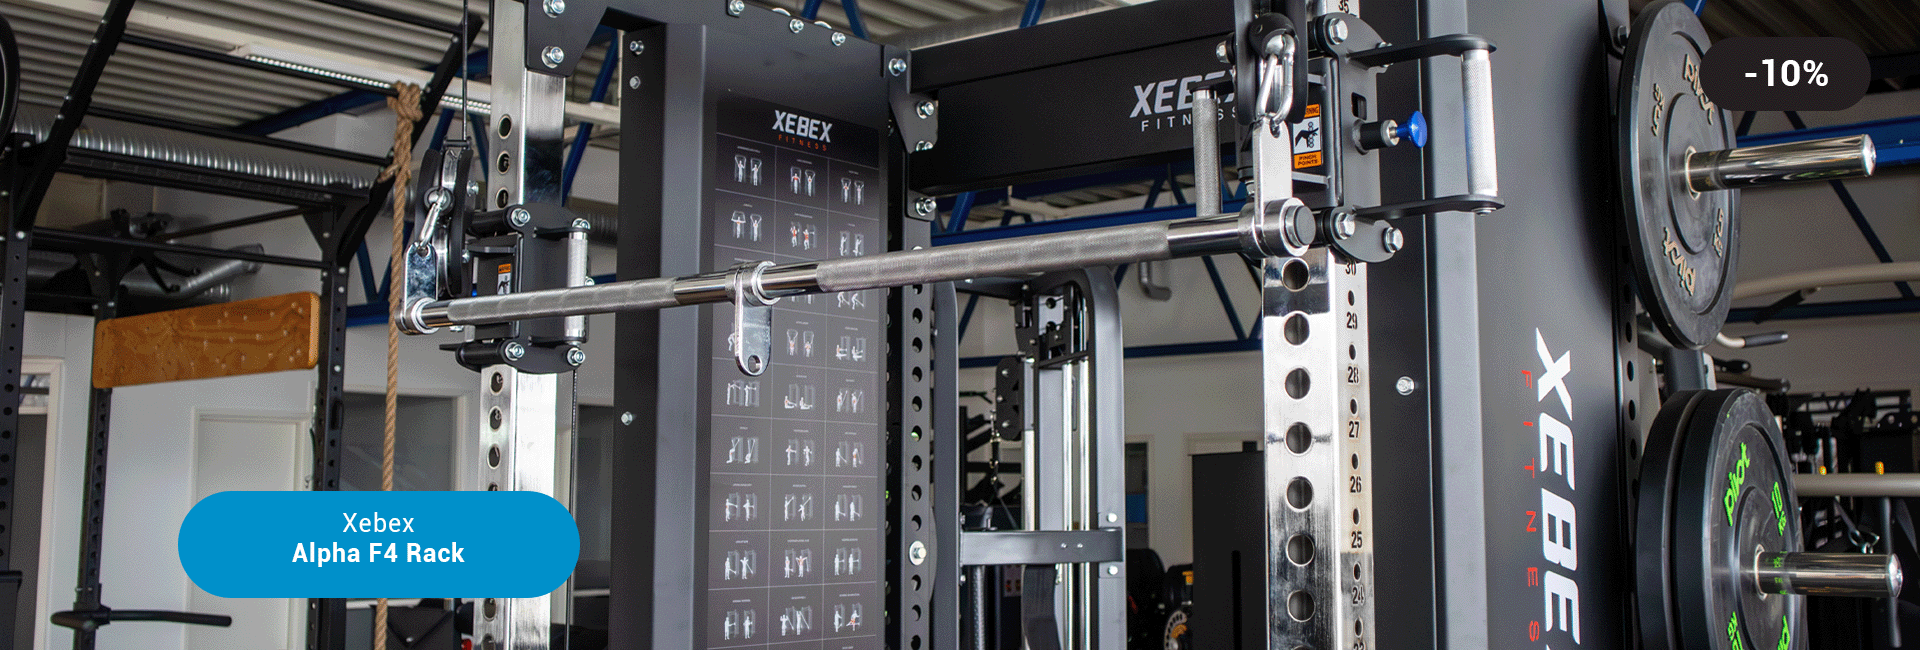 Xebex Alpha F4 Rack med tilleggsutstyr